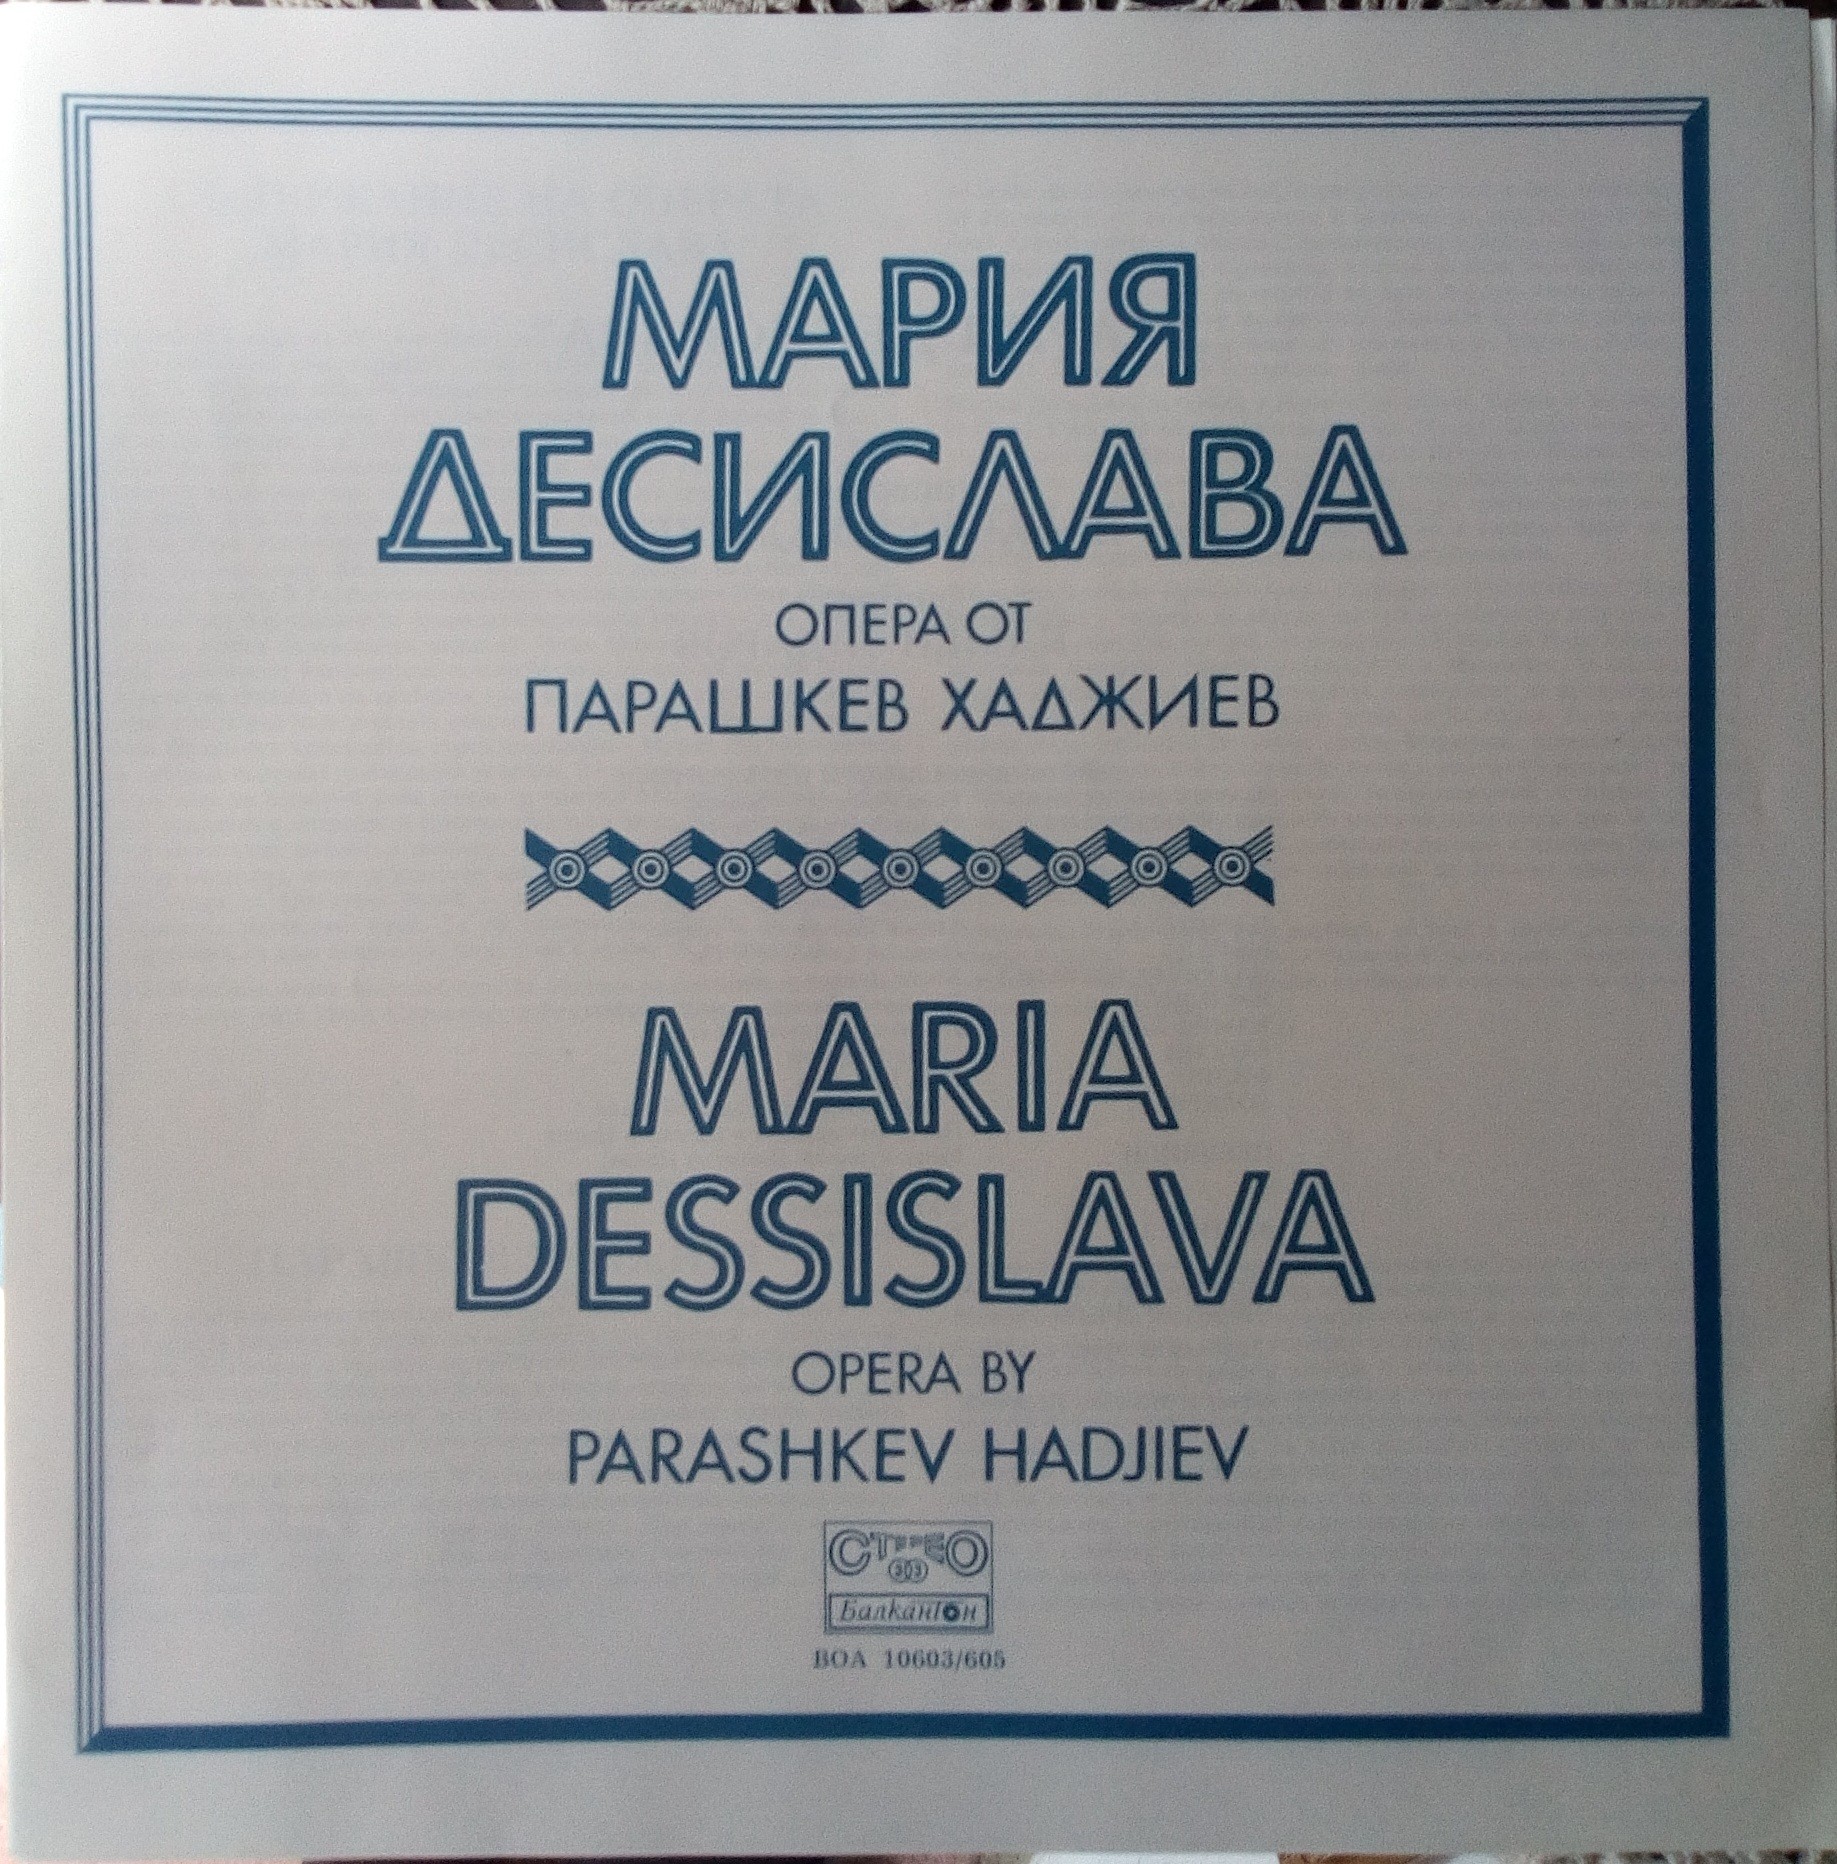 Парашкев Хаджиев. "Мария Десислава", опера